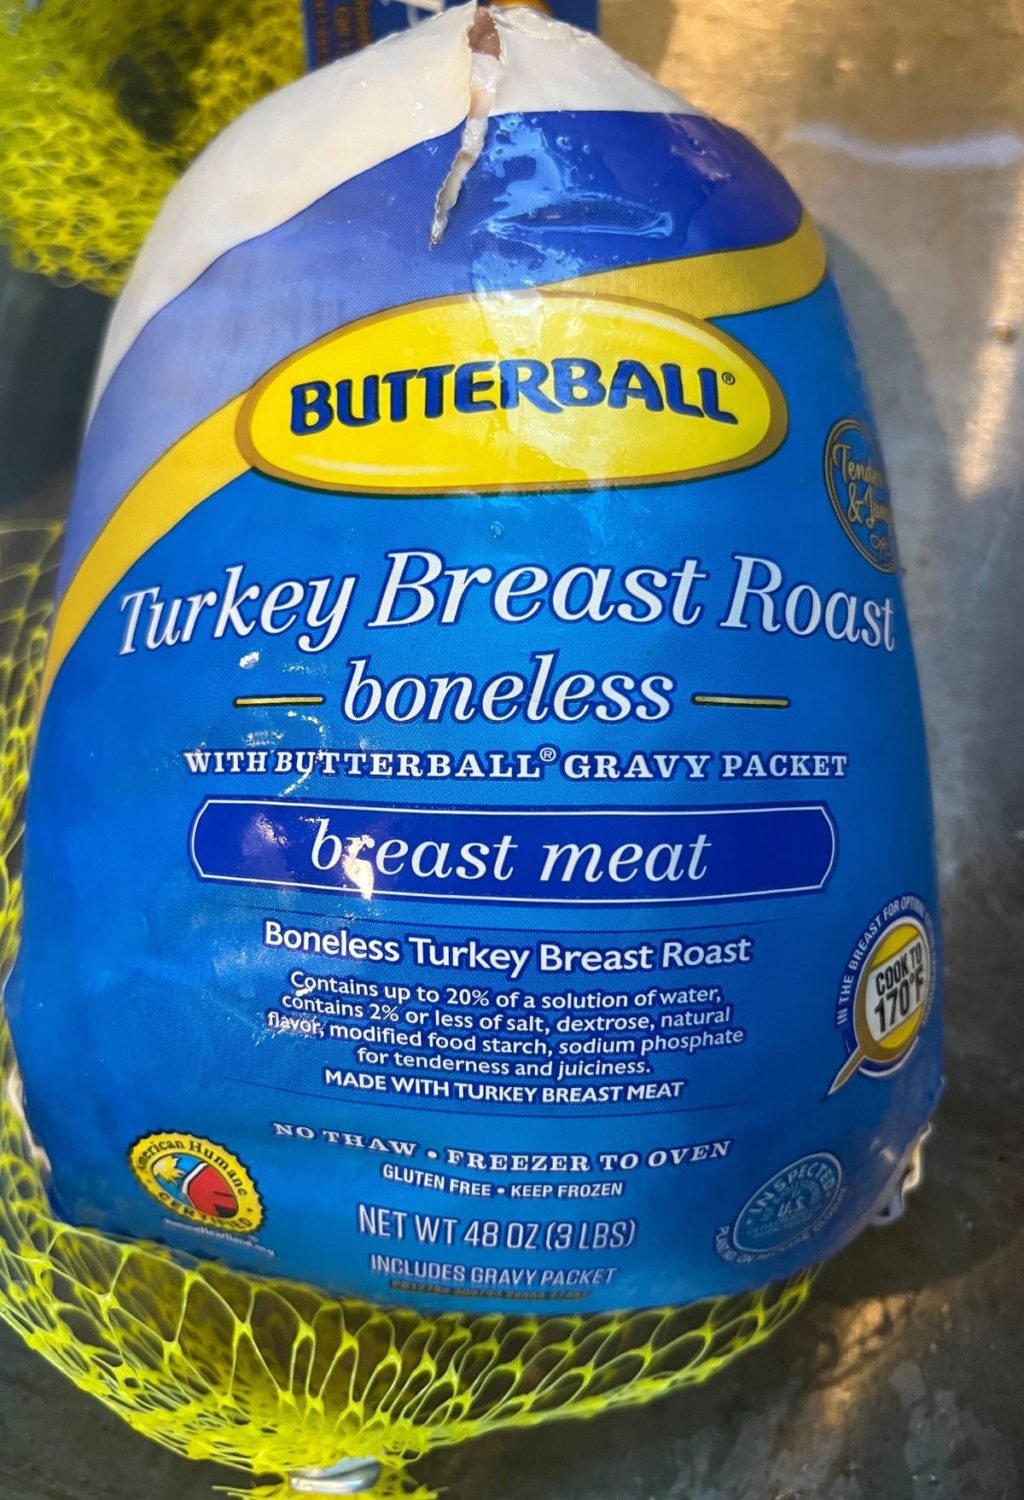 Air Fryer Butterball turkey breast roast boneless.